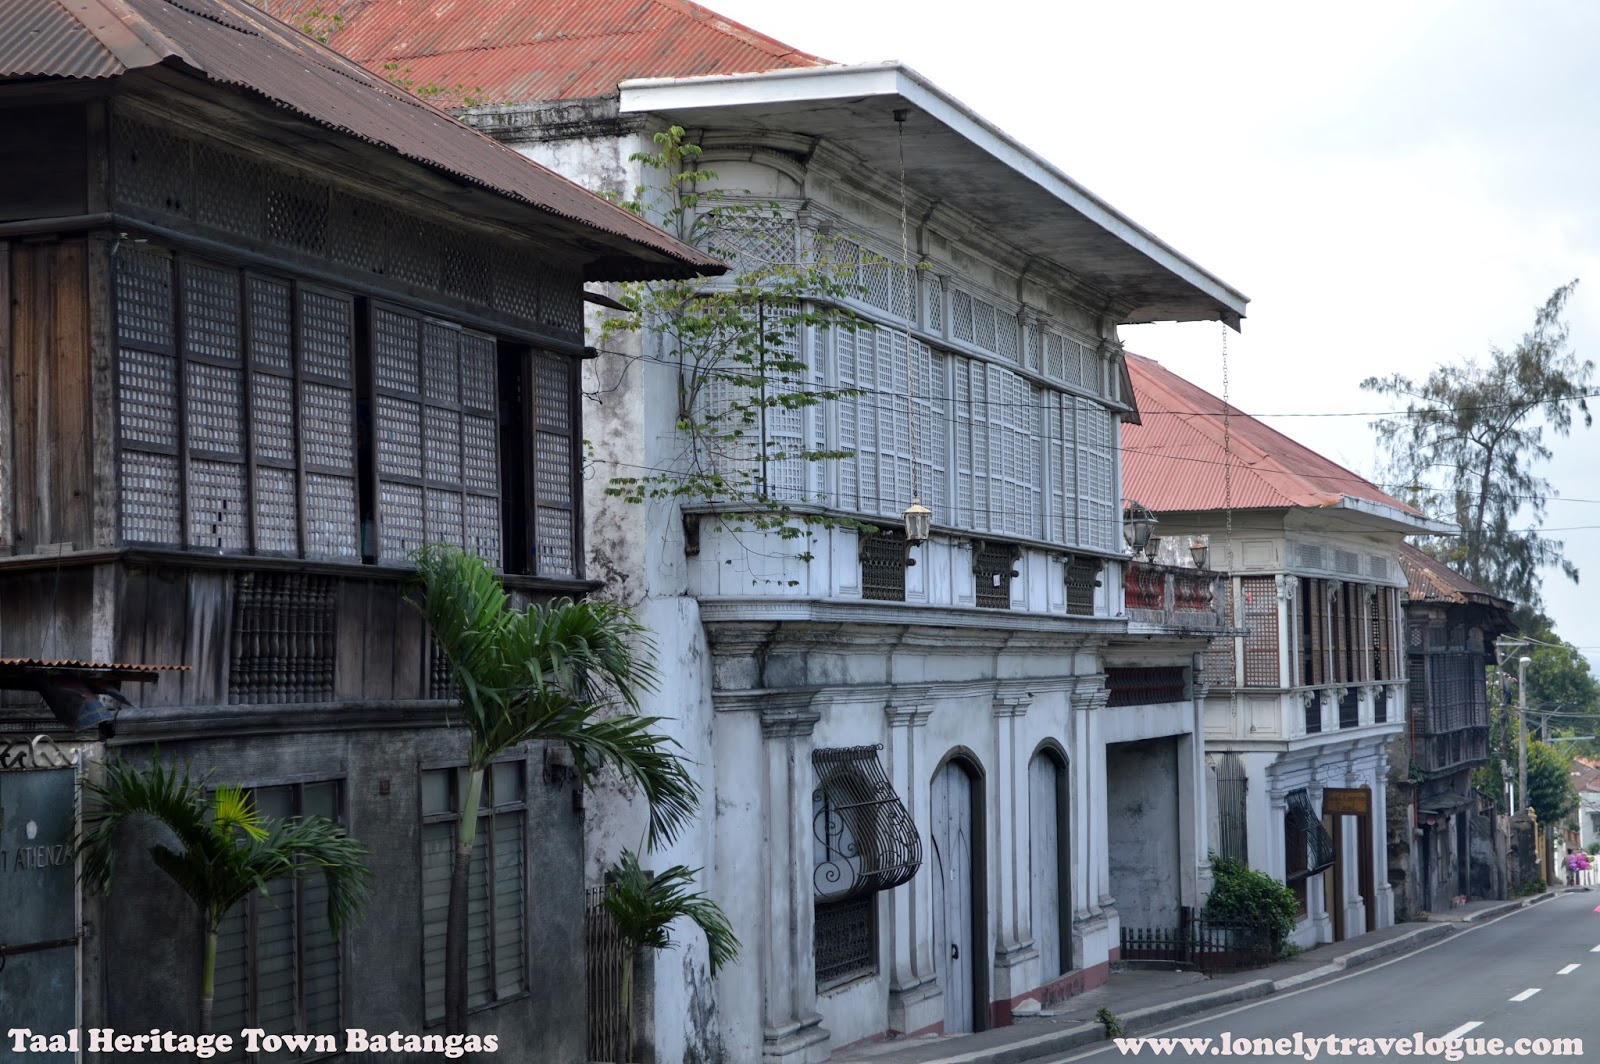 PHILIPPINEN MAGAZIN -  SAMSTAGSTHEMA - MALERISCHE ORTE: Taal Heritage Town